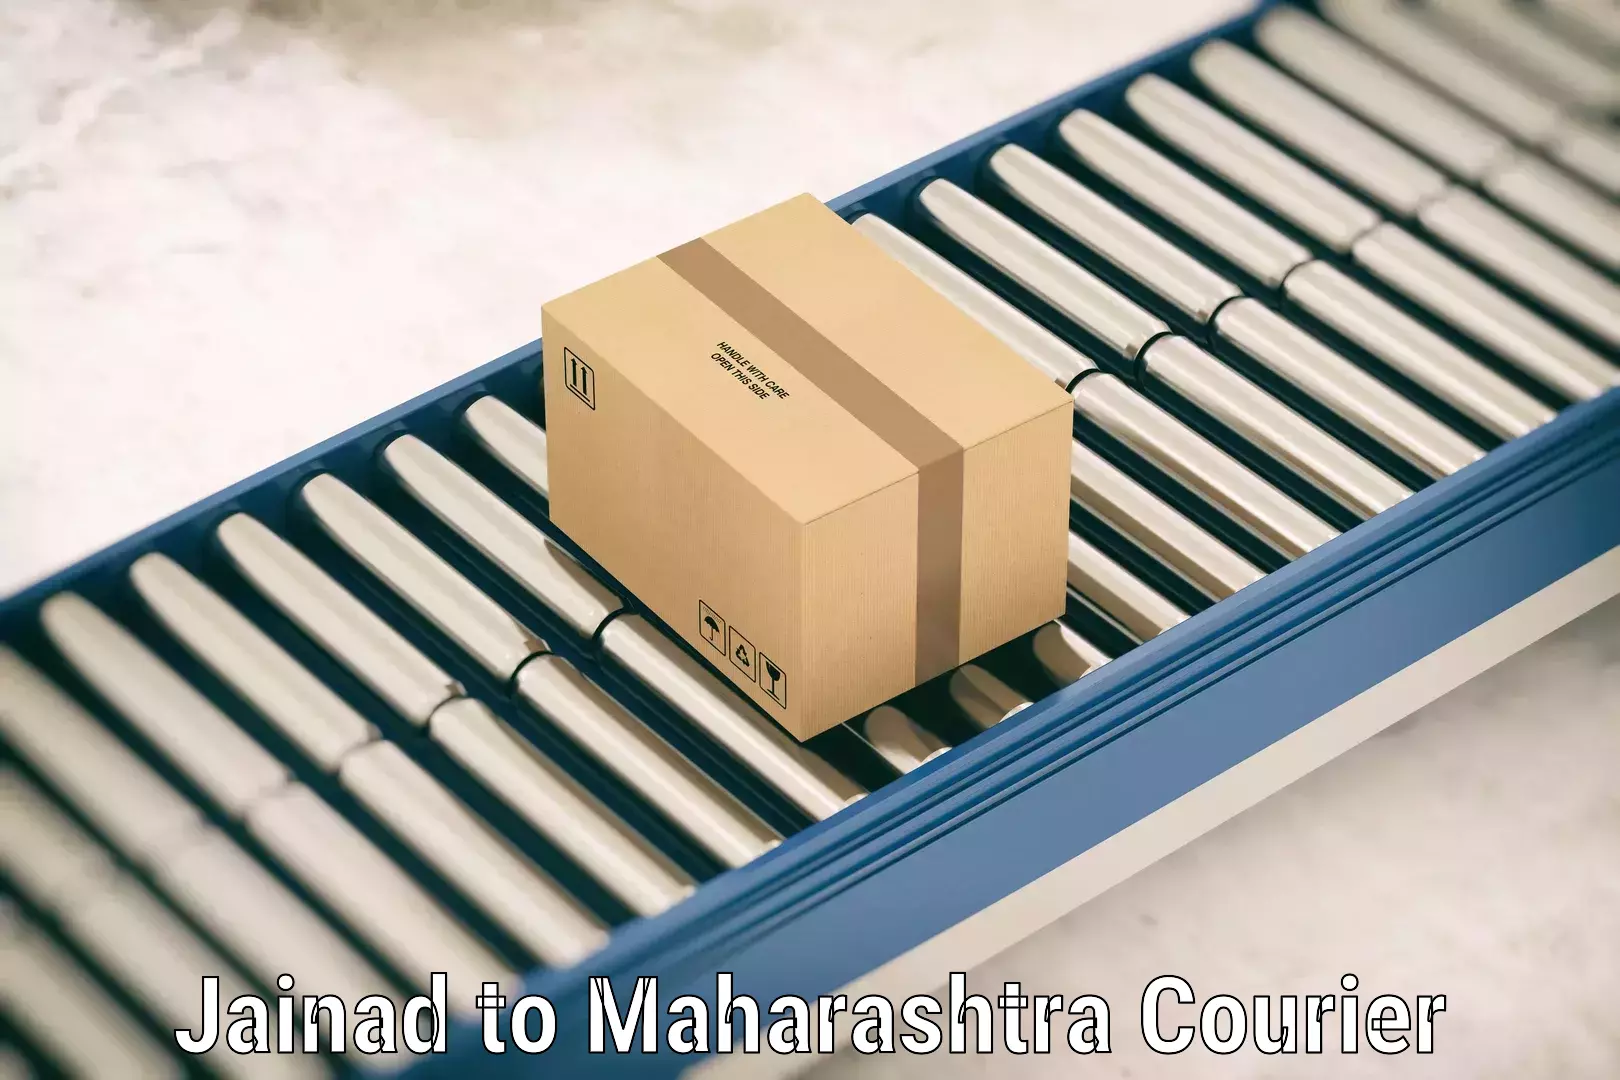 Luggage shipping service Jainad to Maharashtra